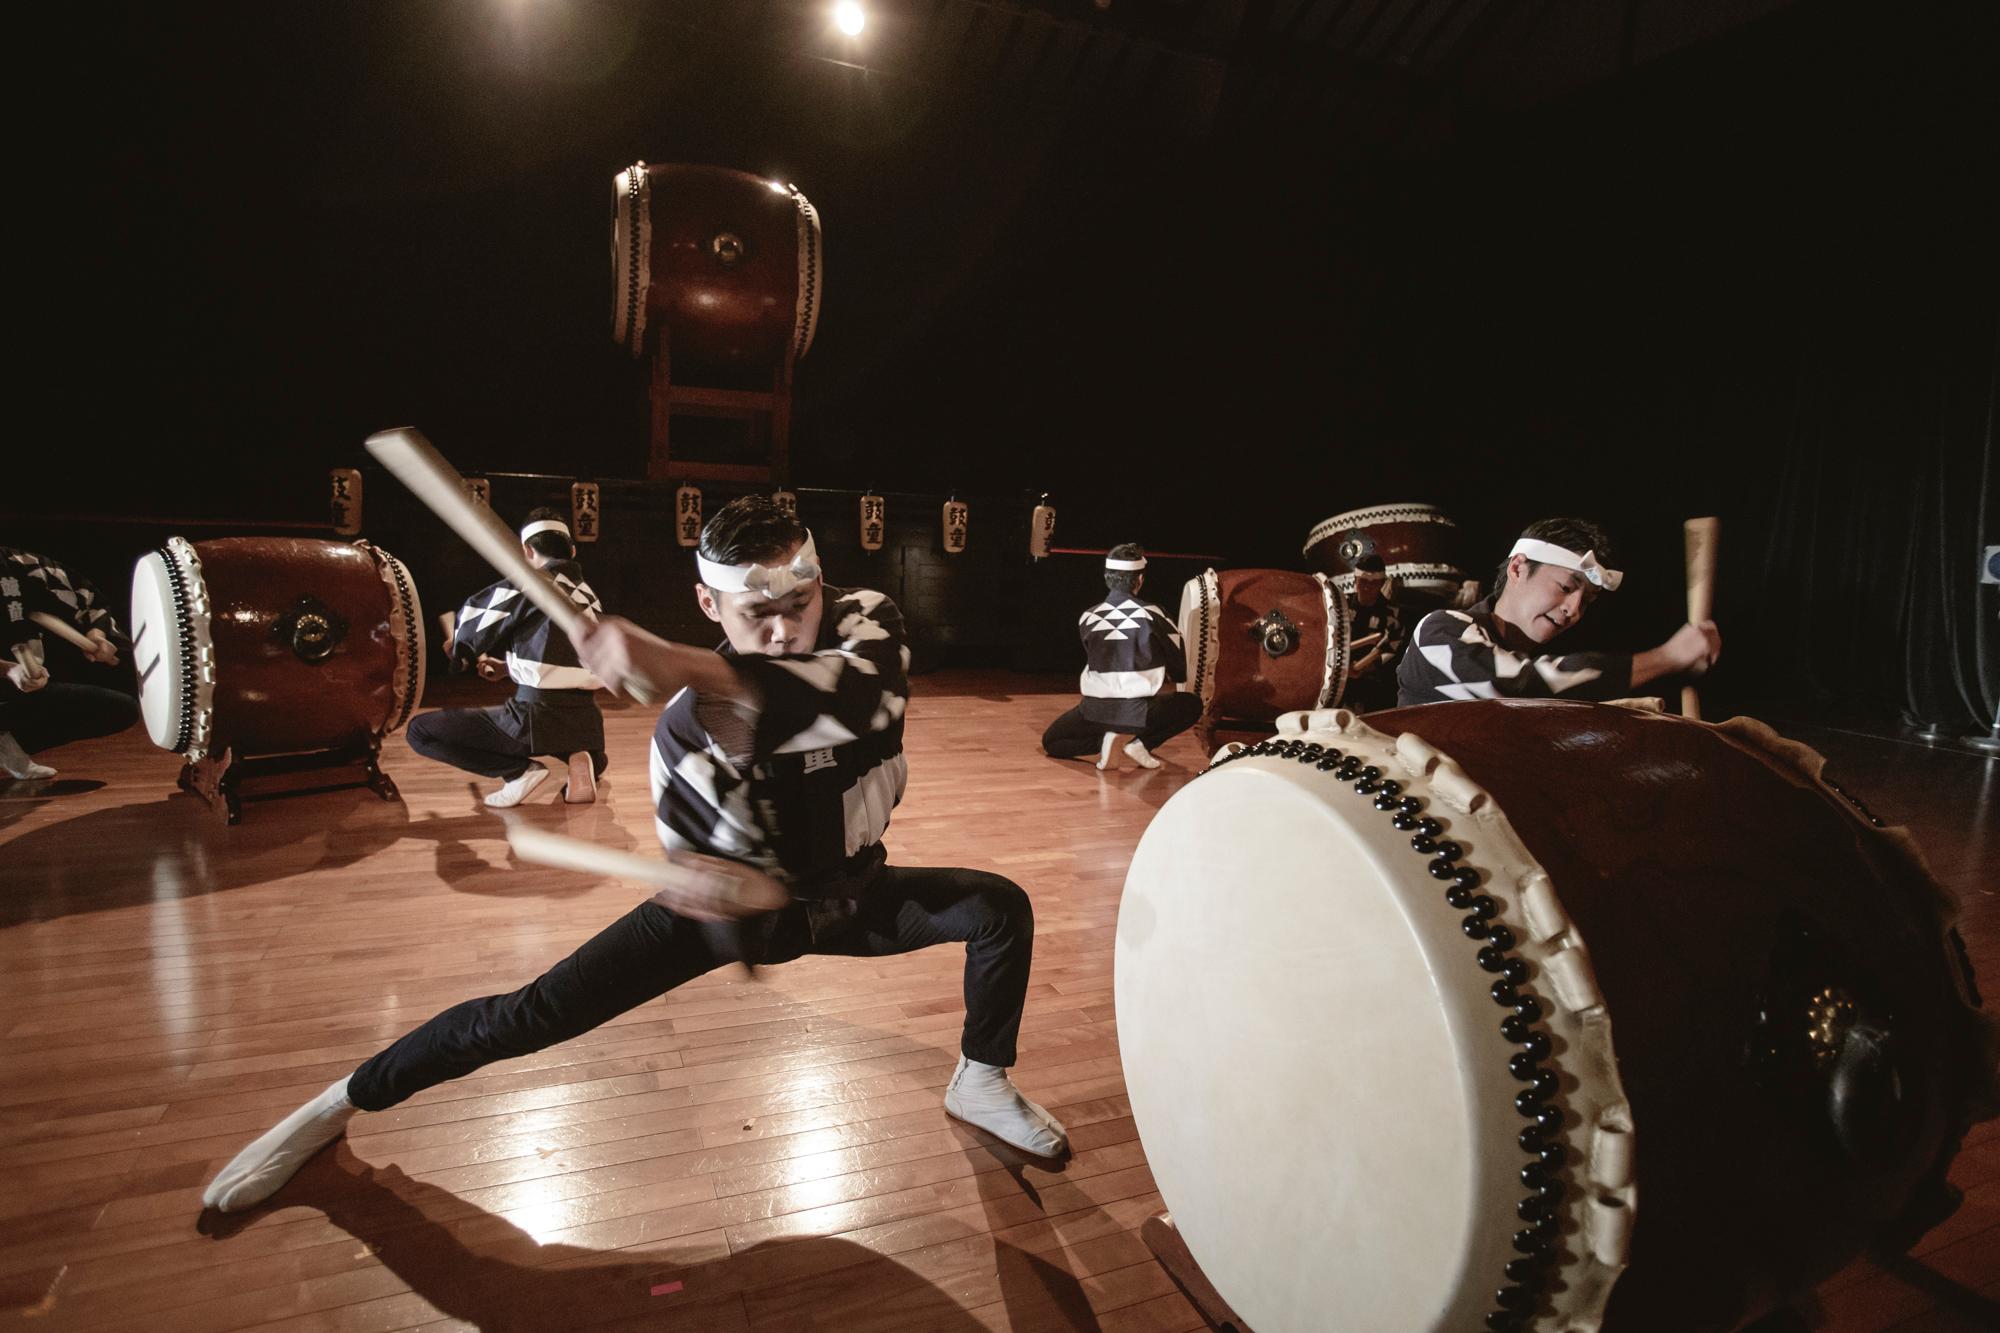 康樂及文化事務署邀得日本太鼓藝團鼓童九月來港演出作品《童》。圖示鼓童《童》劇照。（圖片來源：岡本隆史）